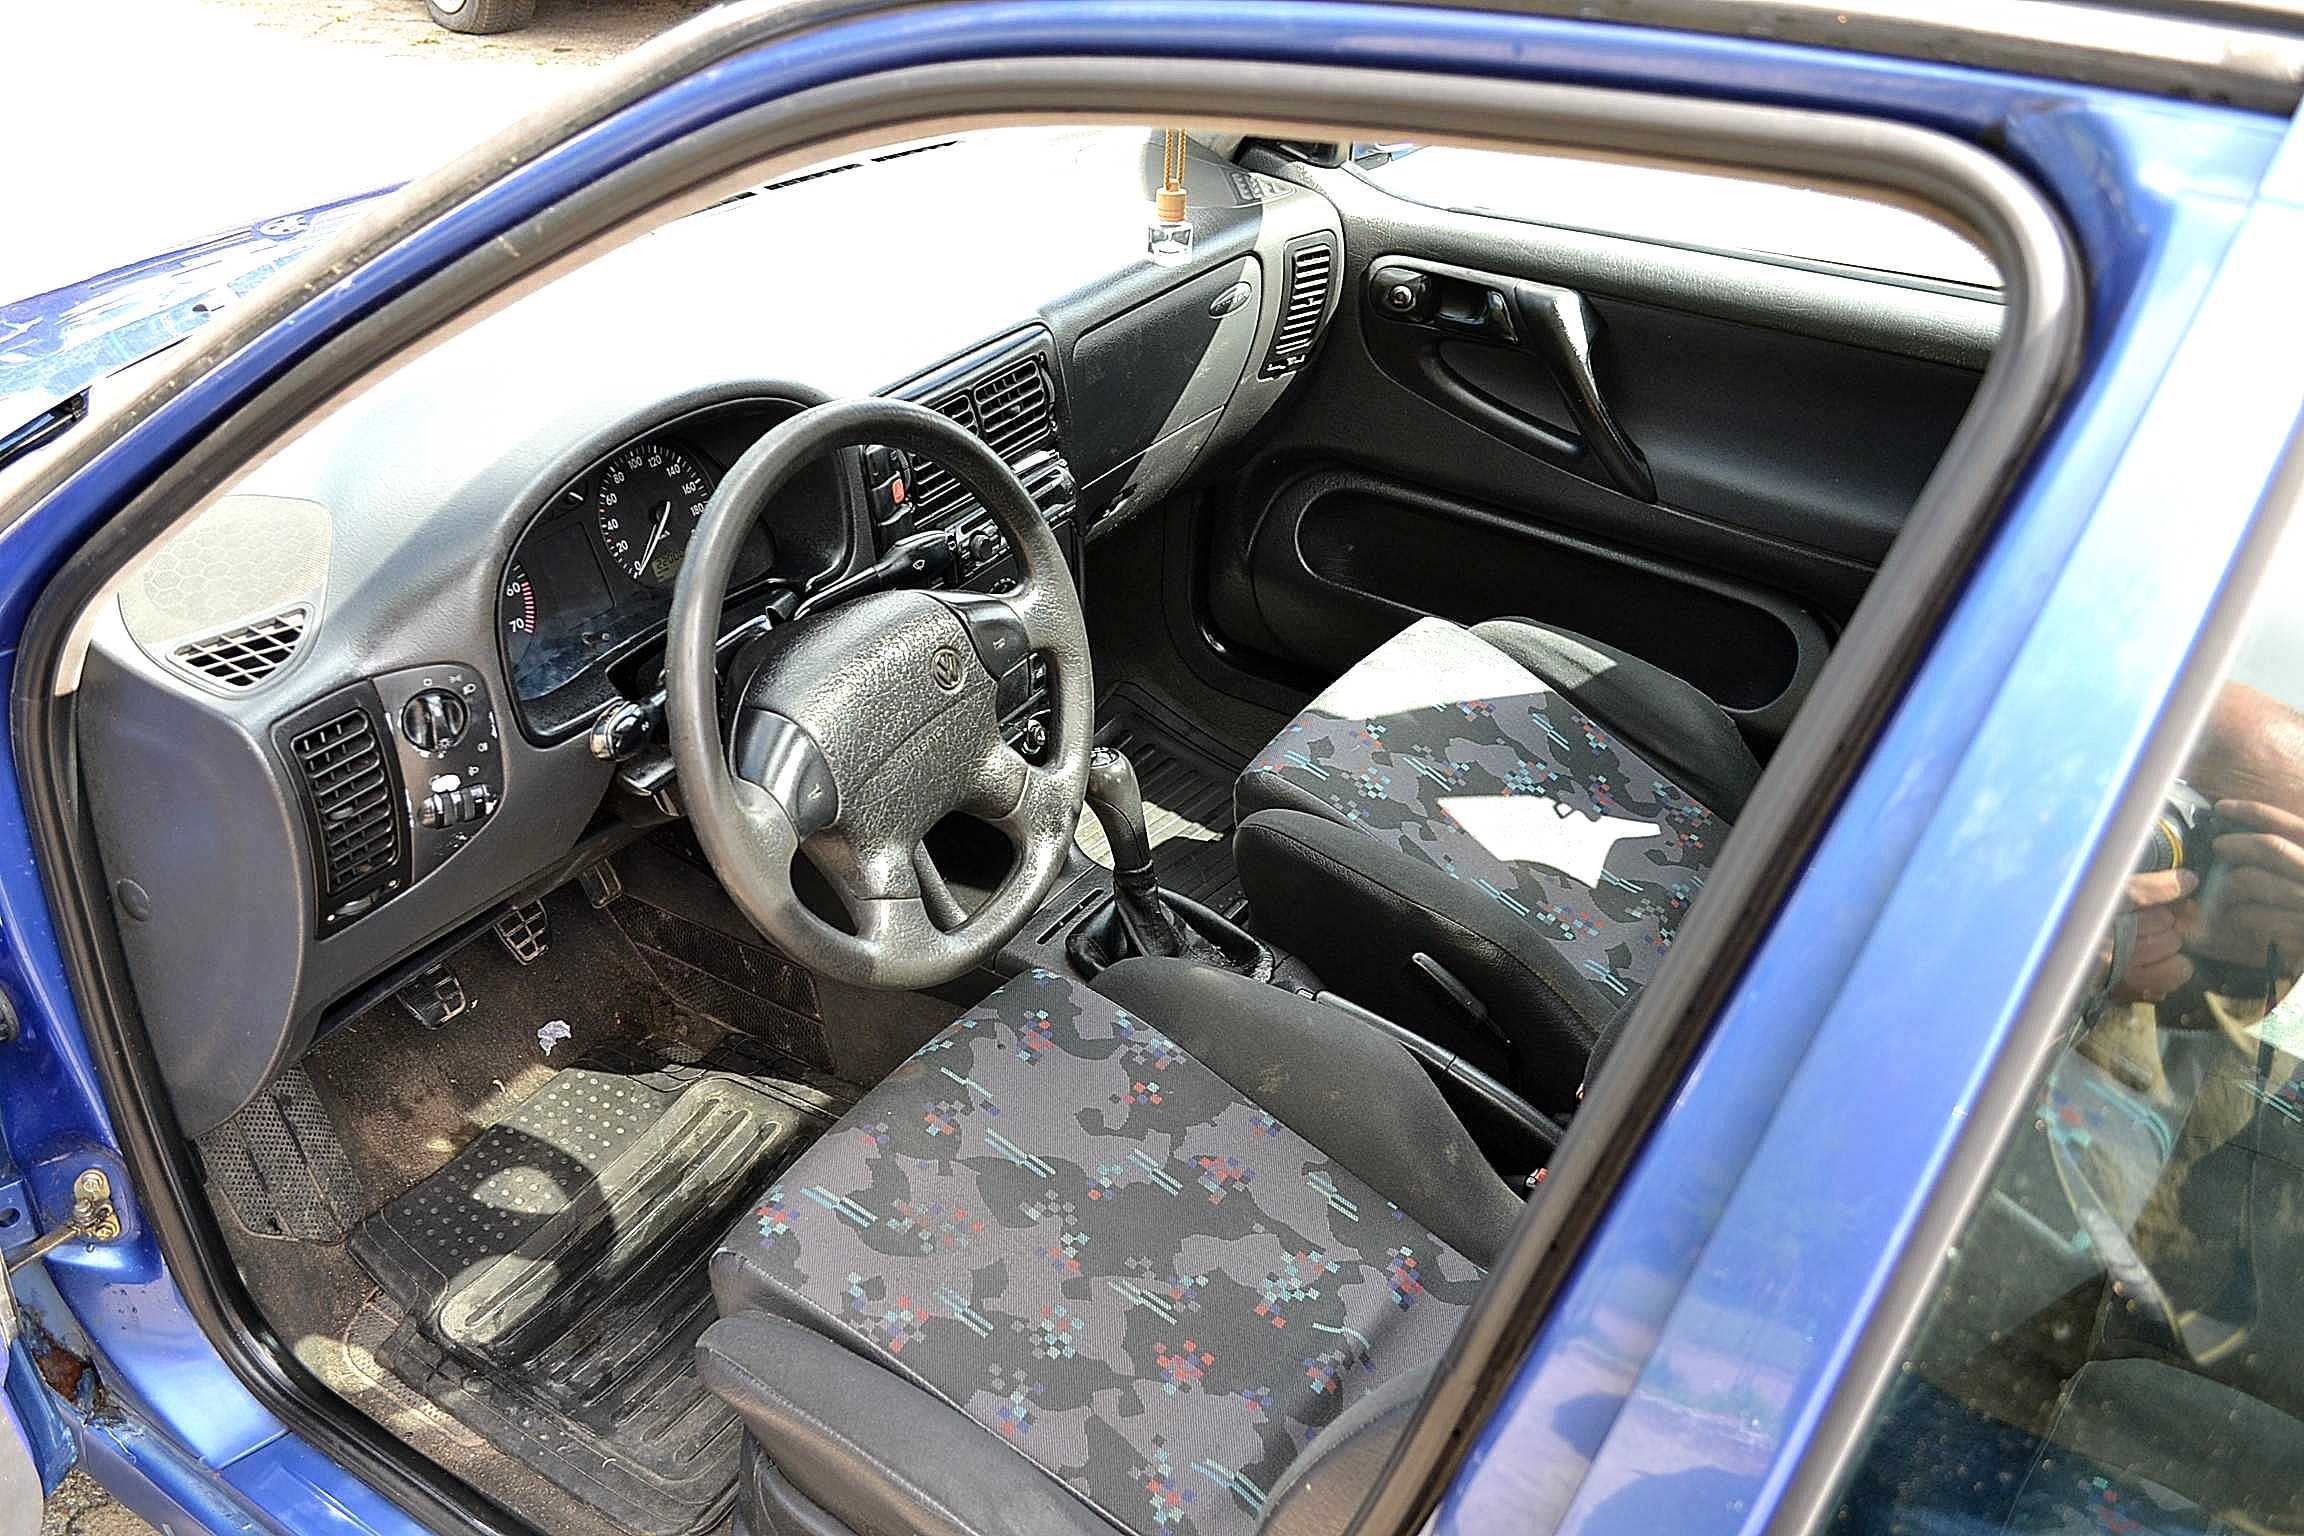 VW - Polo 1.0 cm benzyna , 5-cio drzwiowy ,super stan , Nowe opłaty